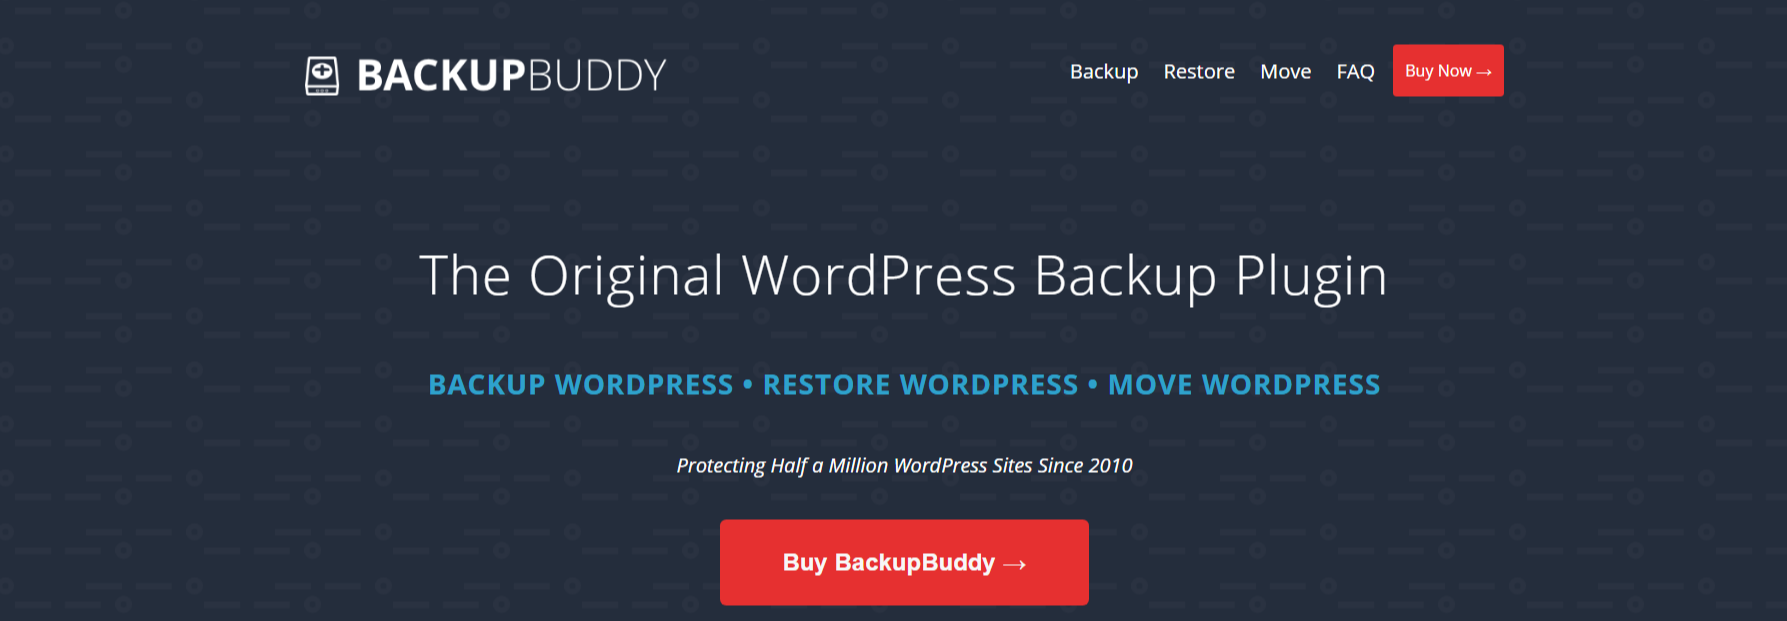 WordPress Backup Plugin- BackupBuddy Review